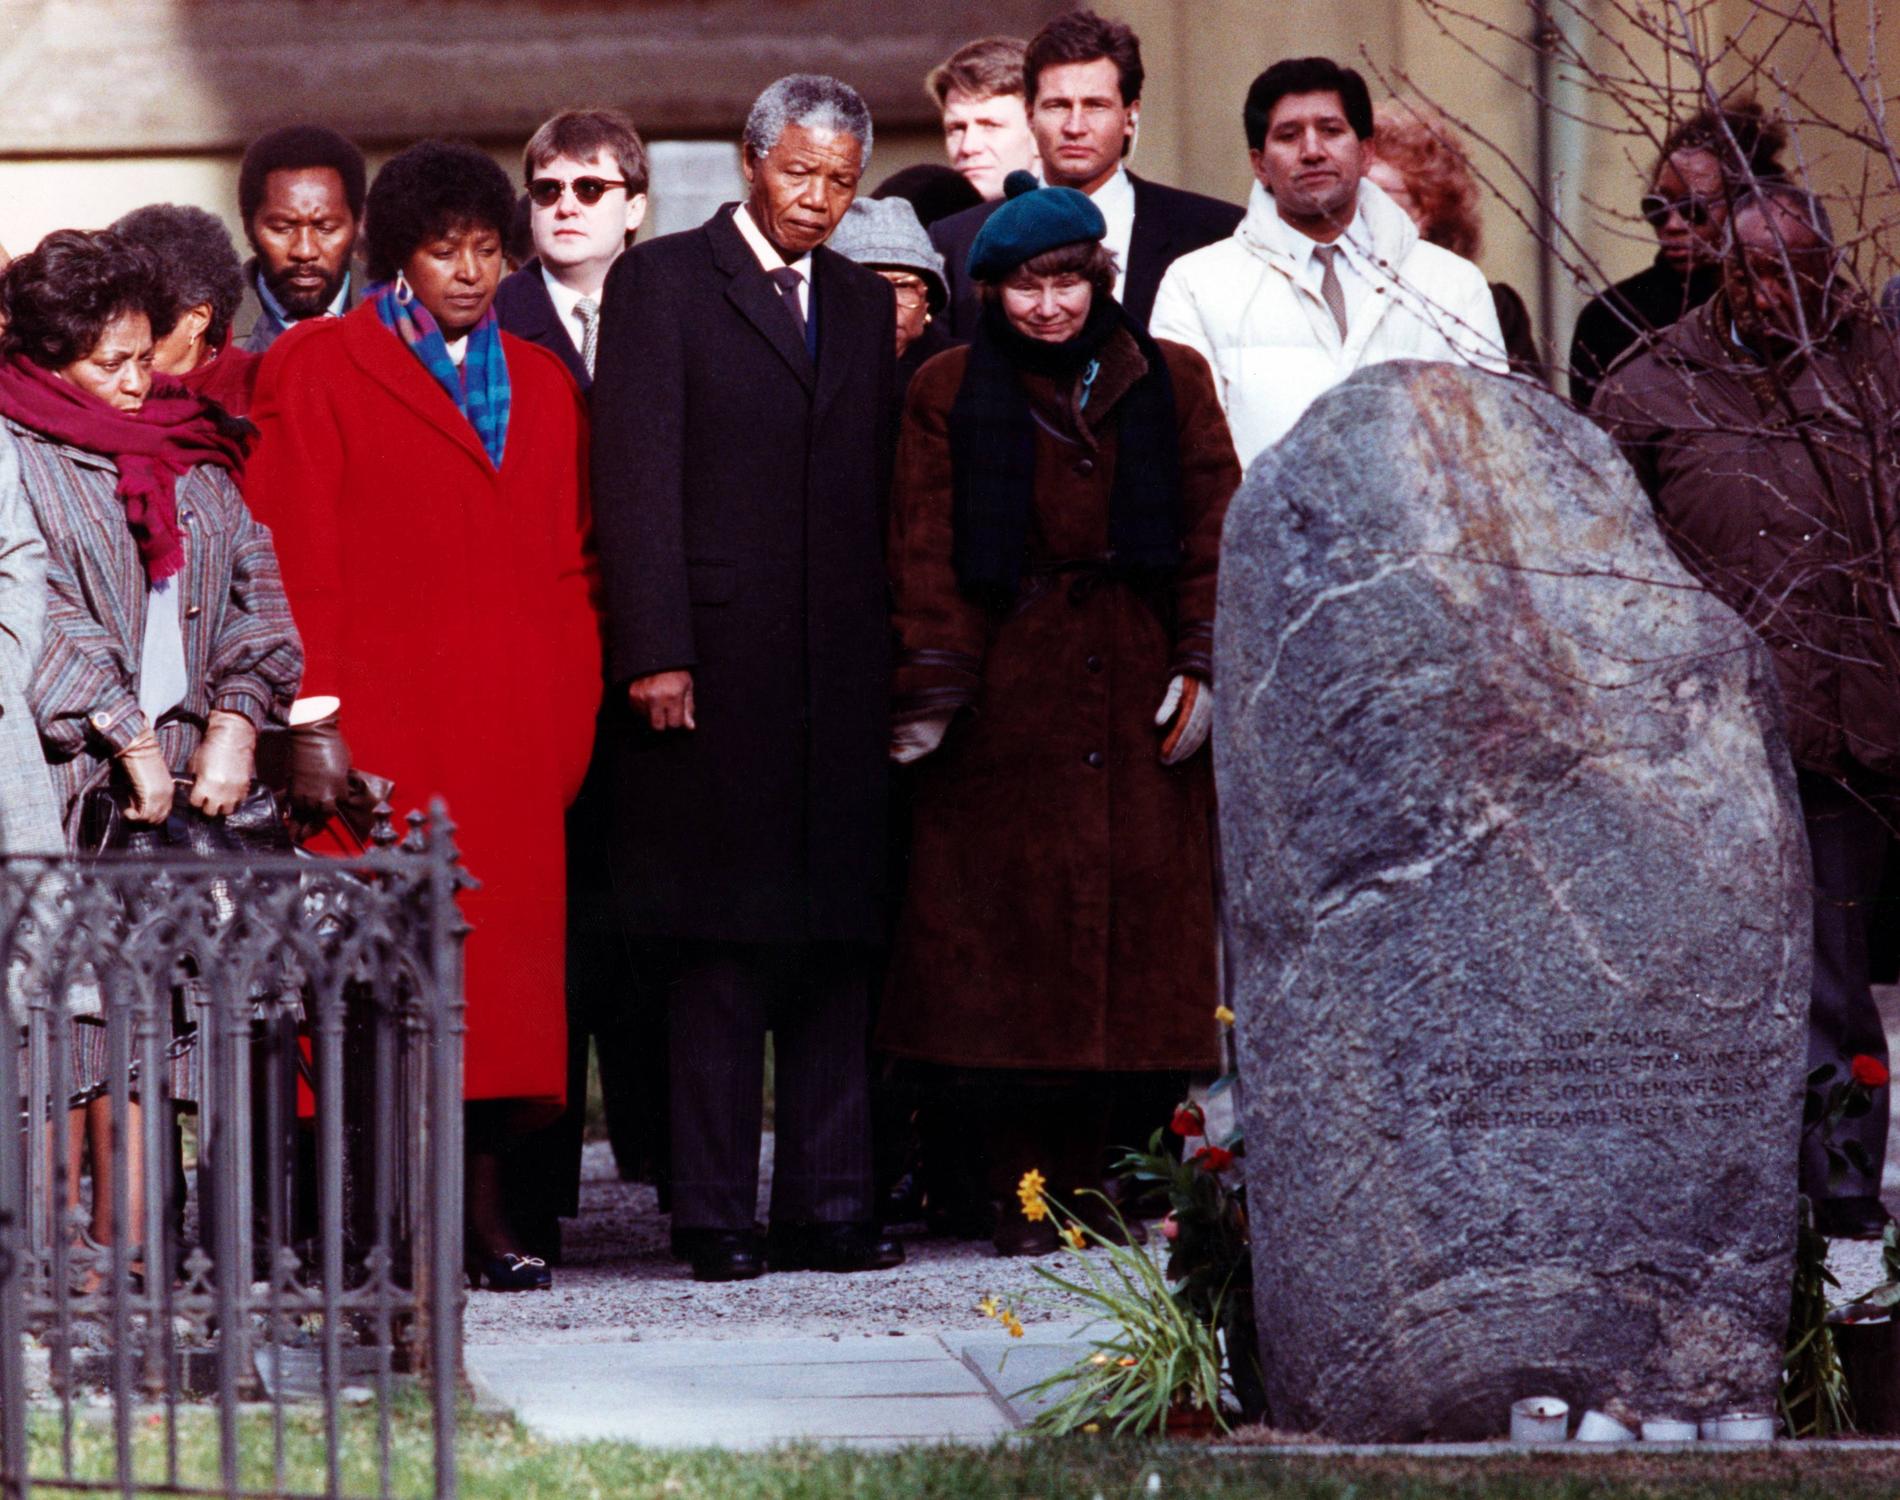 Nelson Mandela besöker Olof Palmes grav vid Adolf Fredriks kyrka i Stockholm tillsammans med bl.a sin hustru Winnie Mandela och Lisbet Palme. Mars 1990.